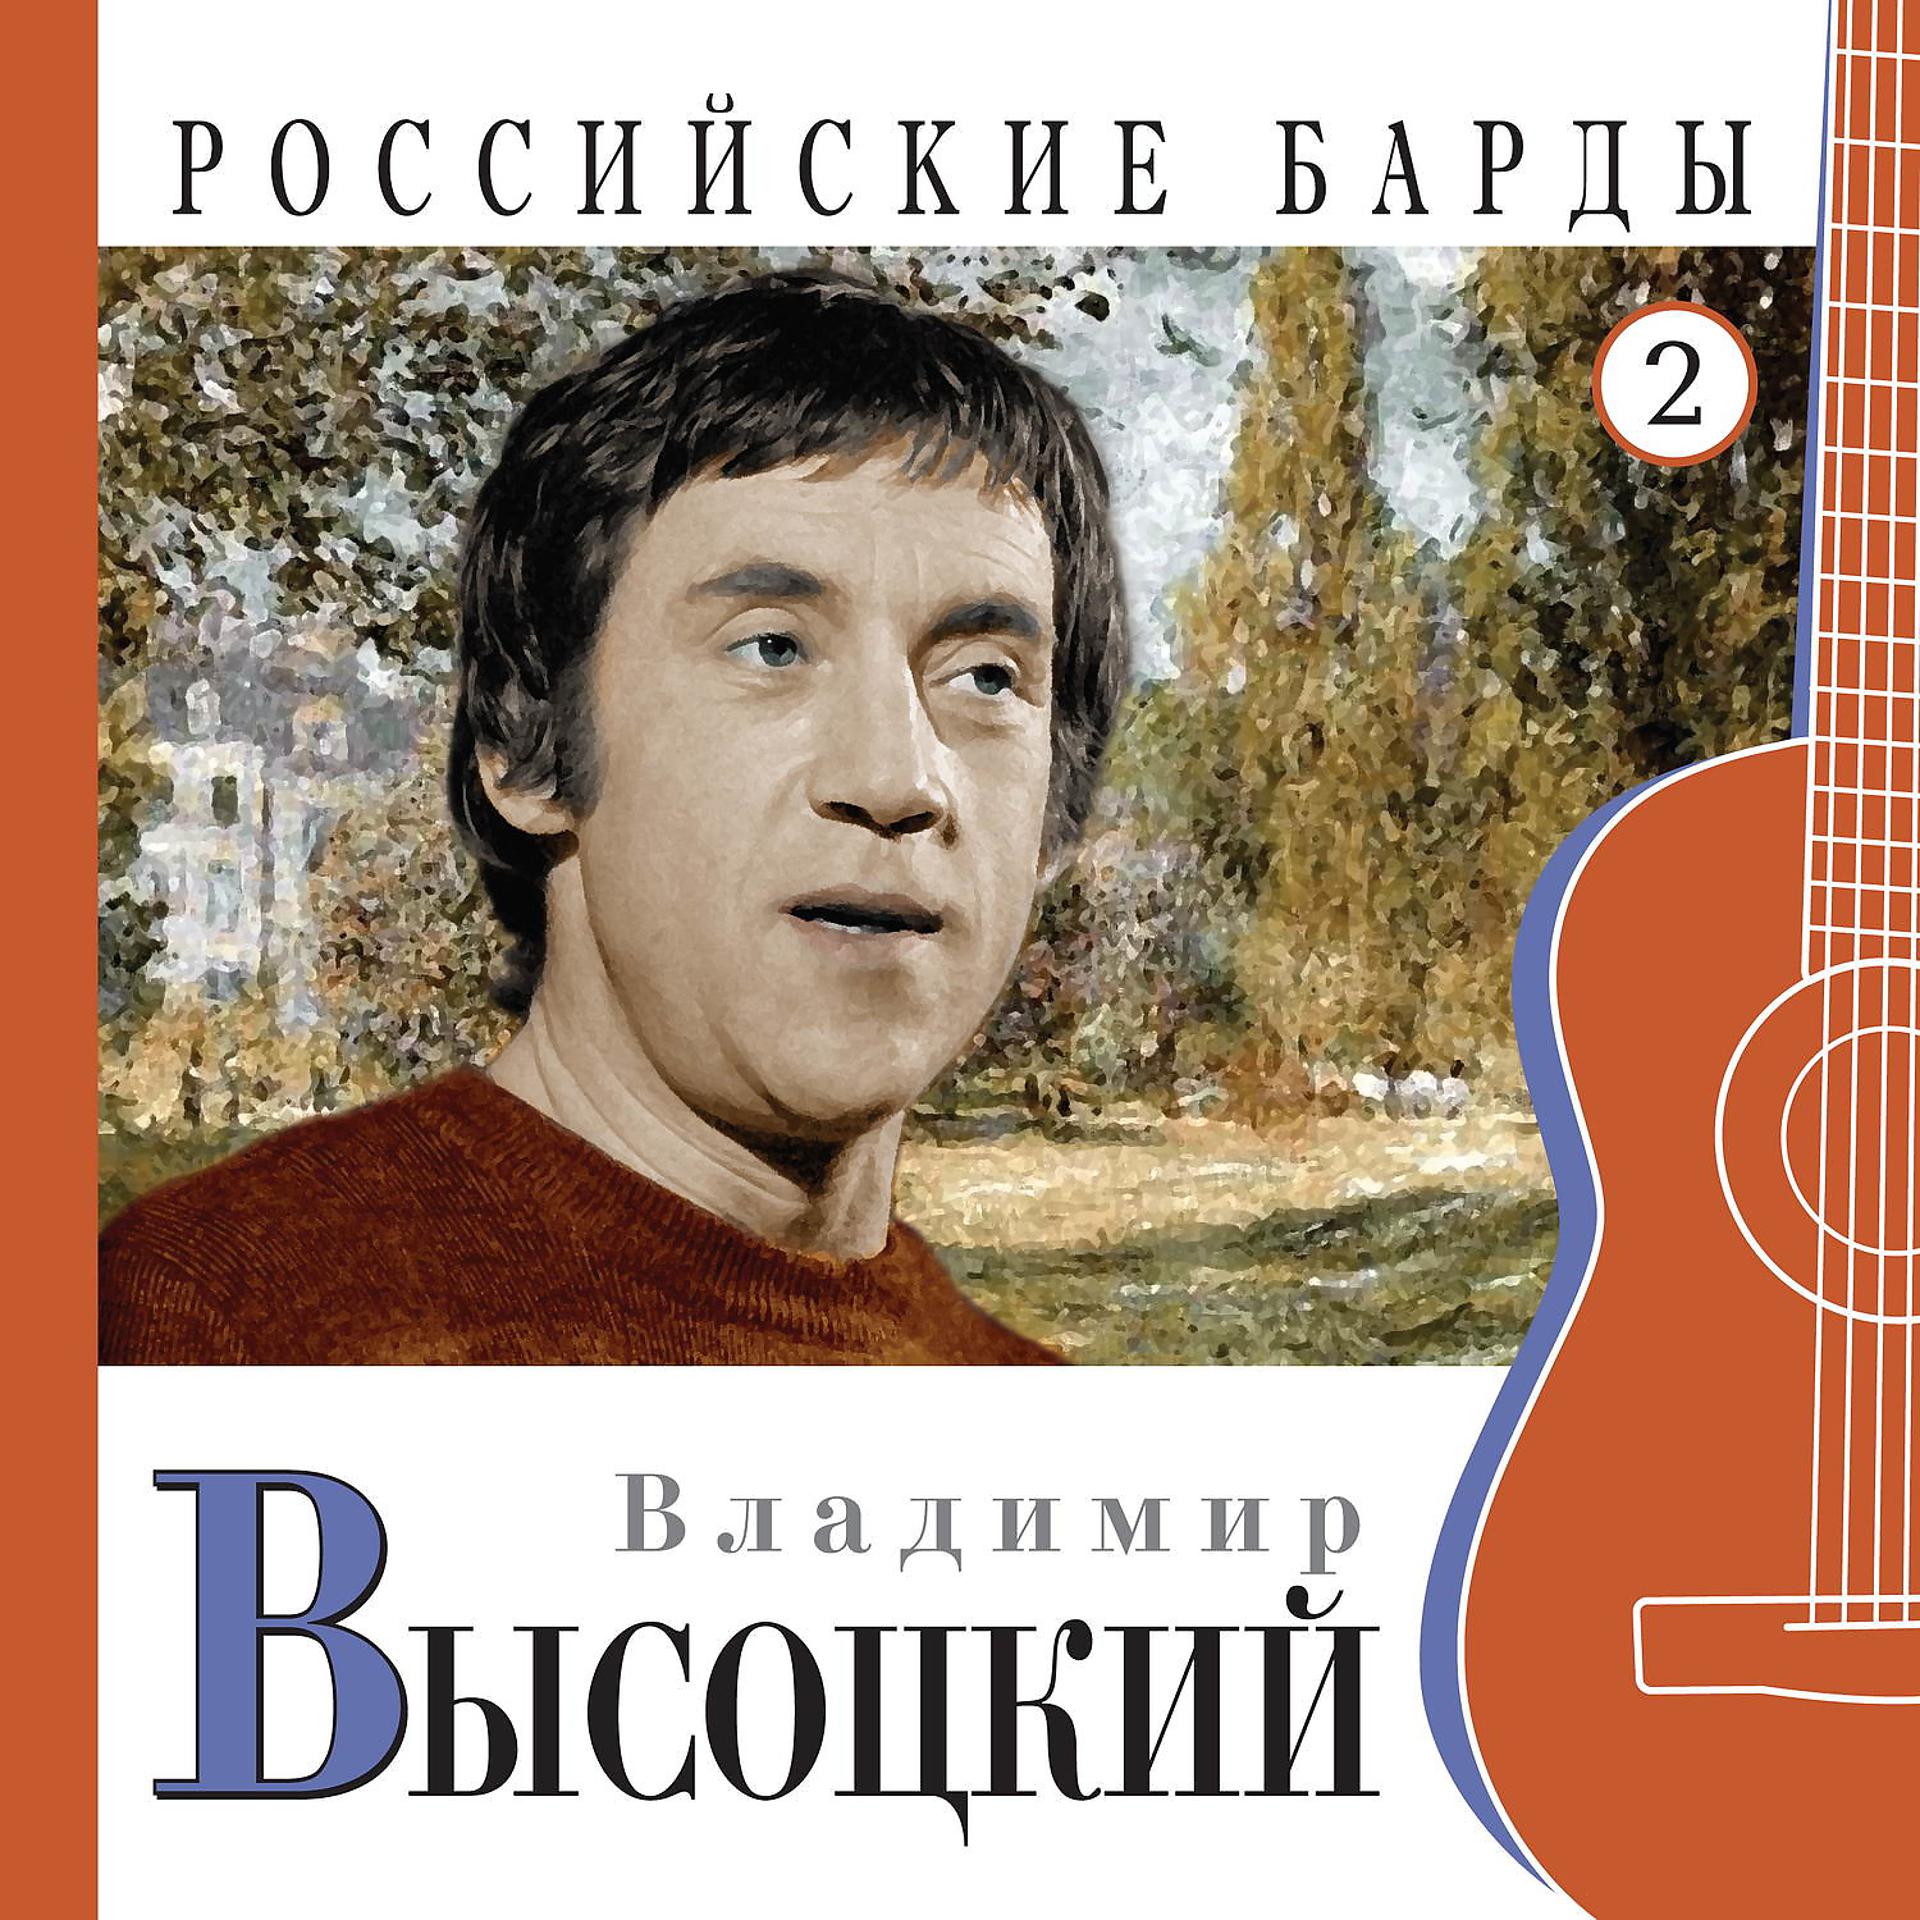 Постер альбома Владимир Высоцкий. Российские барды. Часть 2